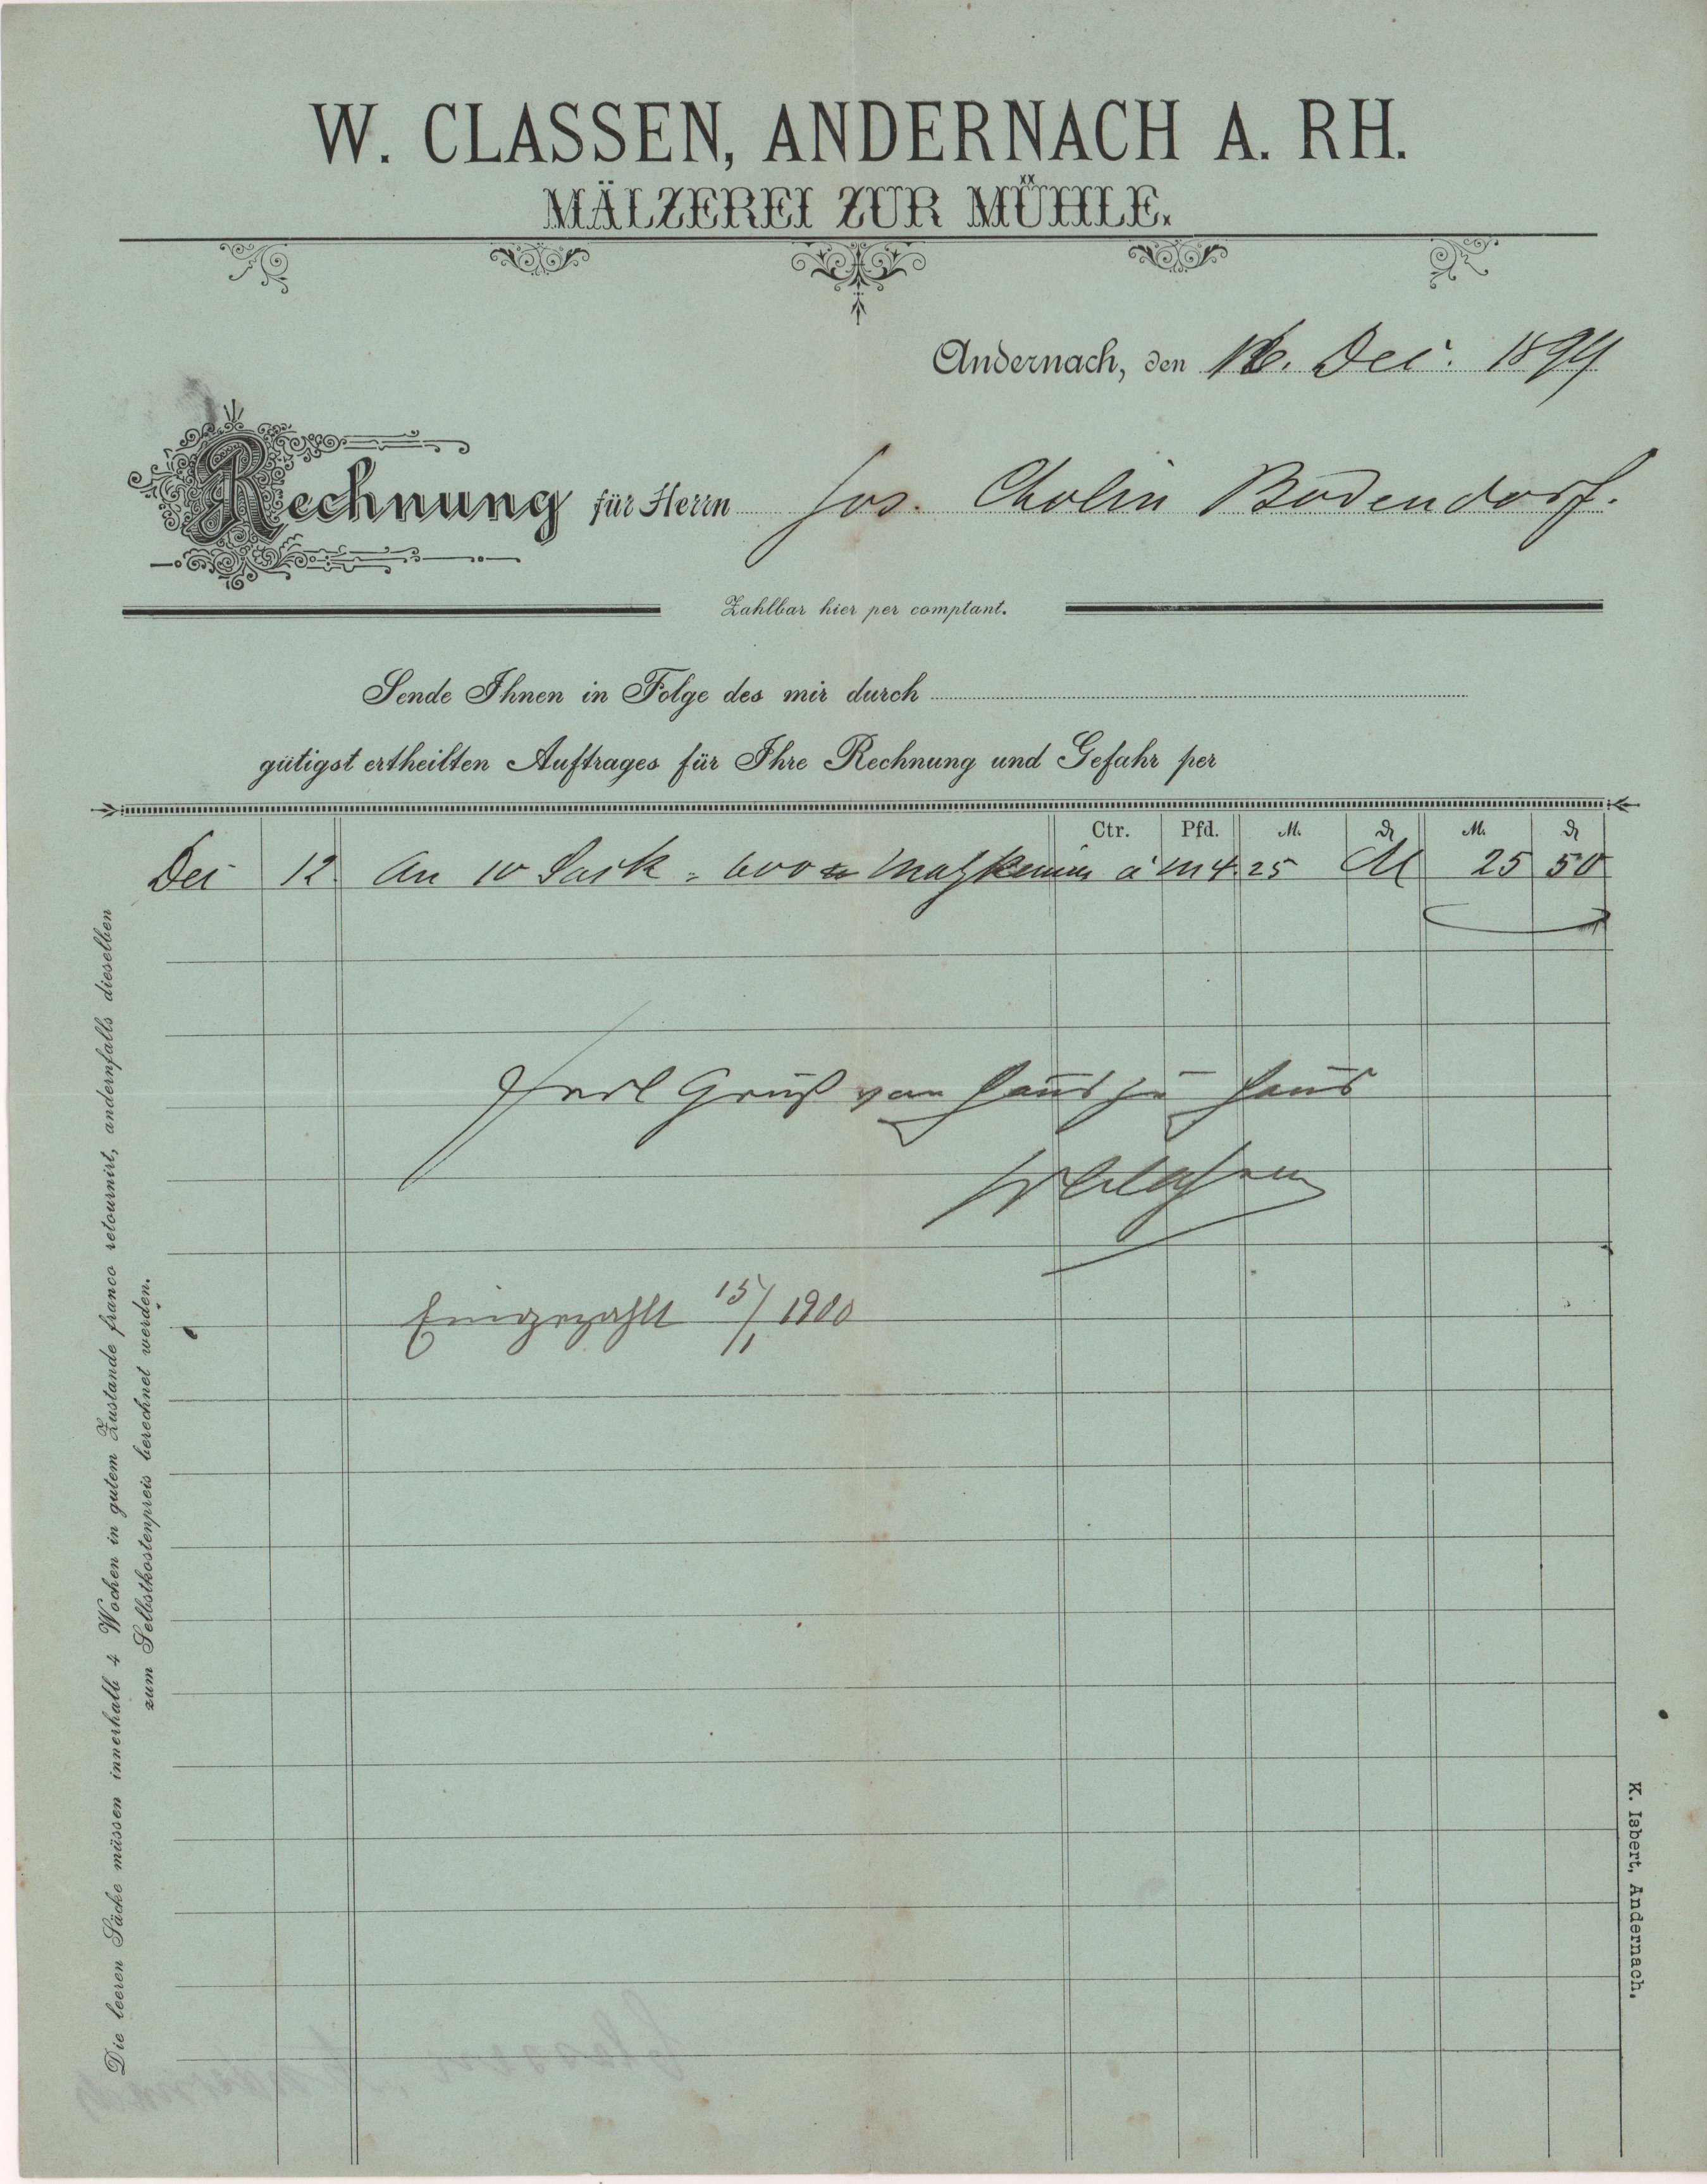 Rechnung der Mälzerei zur Mühle W. Classen in Andernach vom 16. Dezember 1899 an Gastwirtschaft Cholin in Bodendorf/Ahr (Heimatarchiv Bad Bodendorf CC BY-NC-SA)